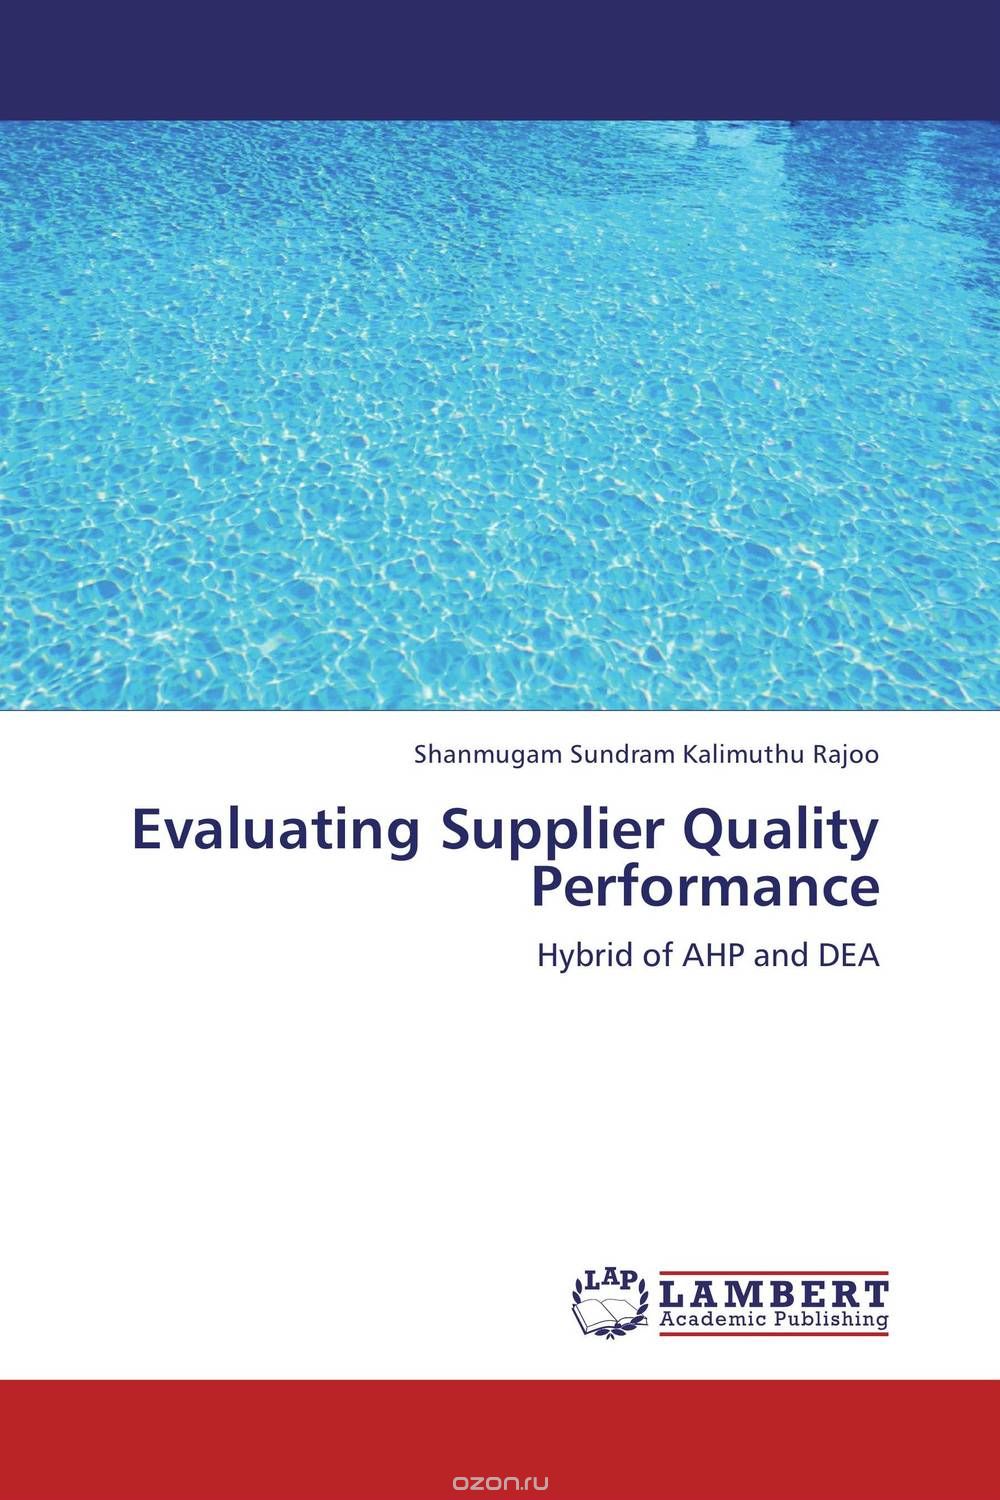 Скачать книгу "Evaluating Supplier Quality Performance"